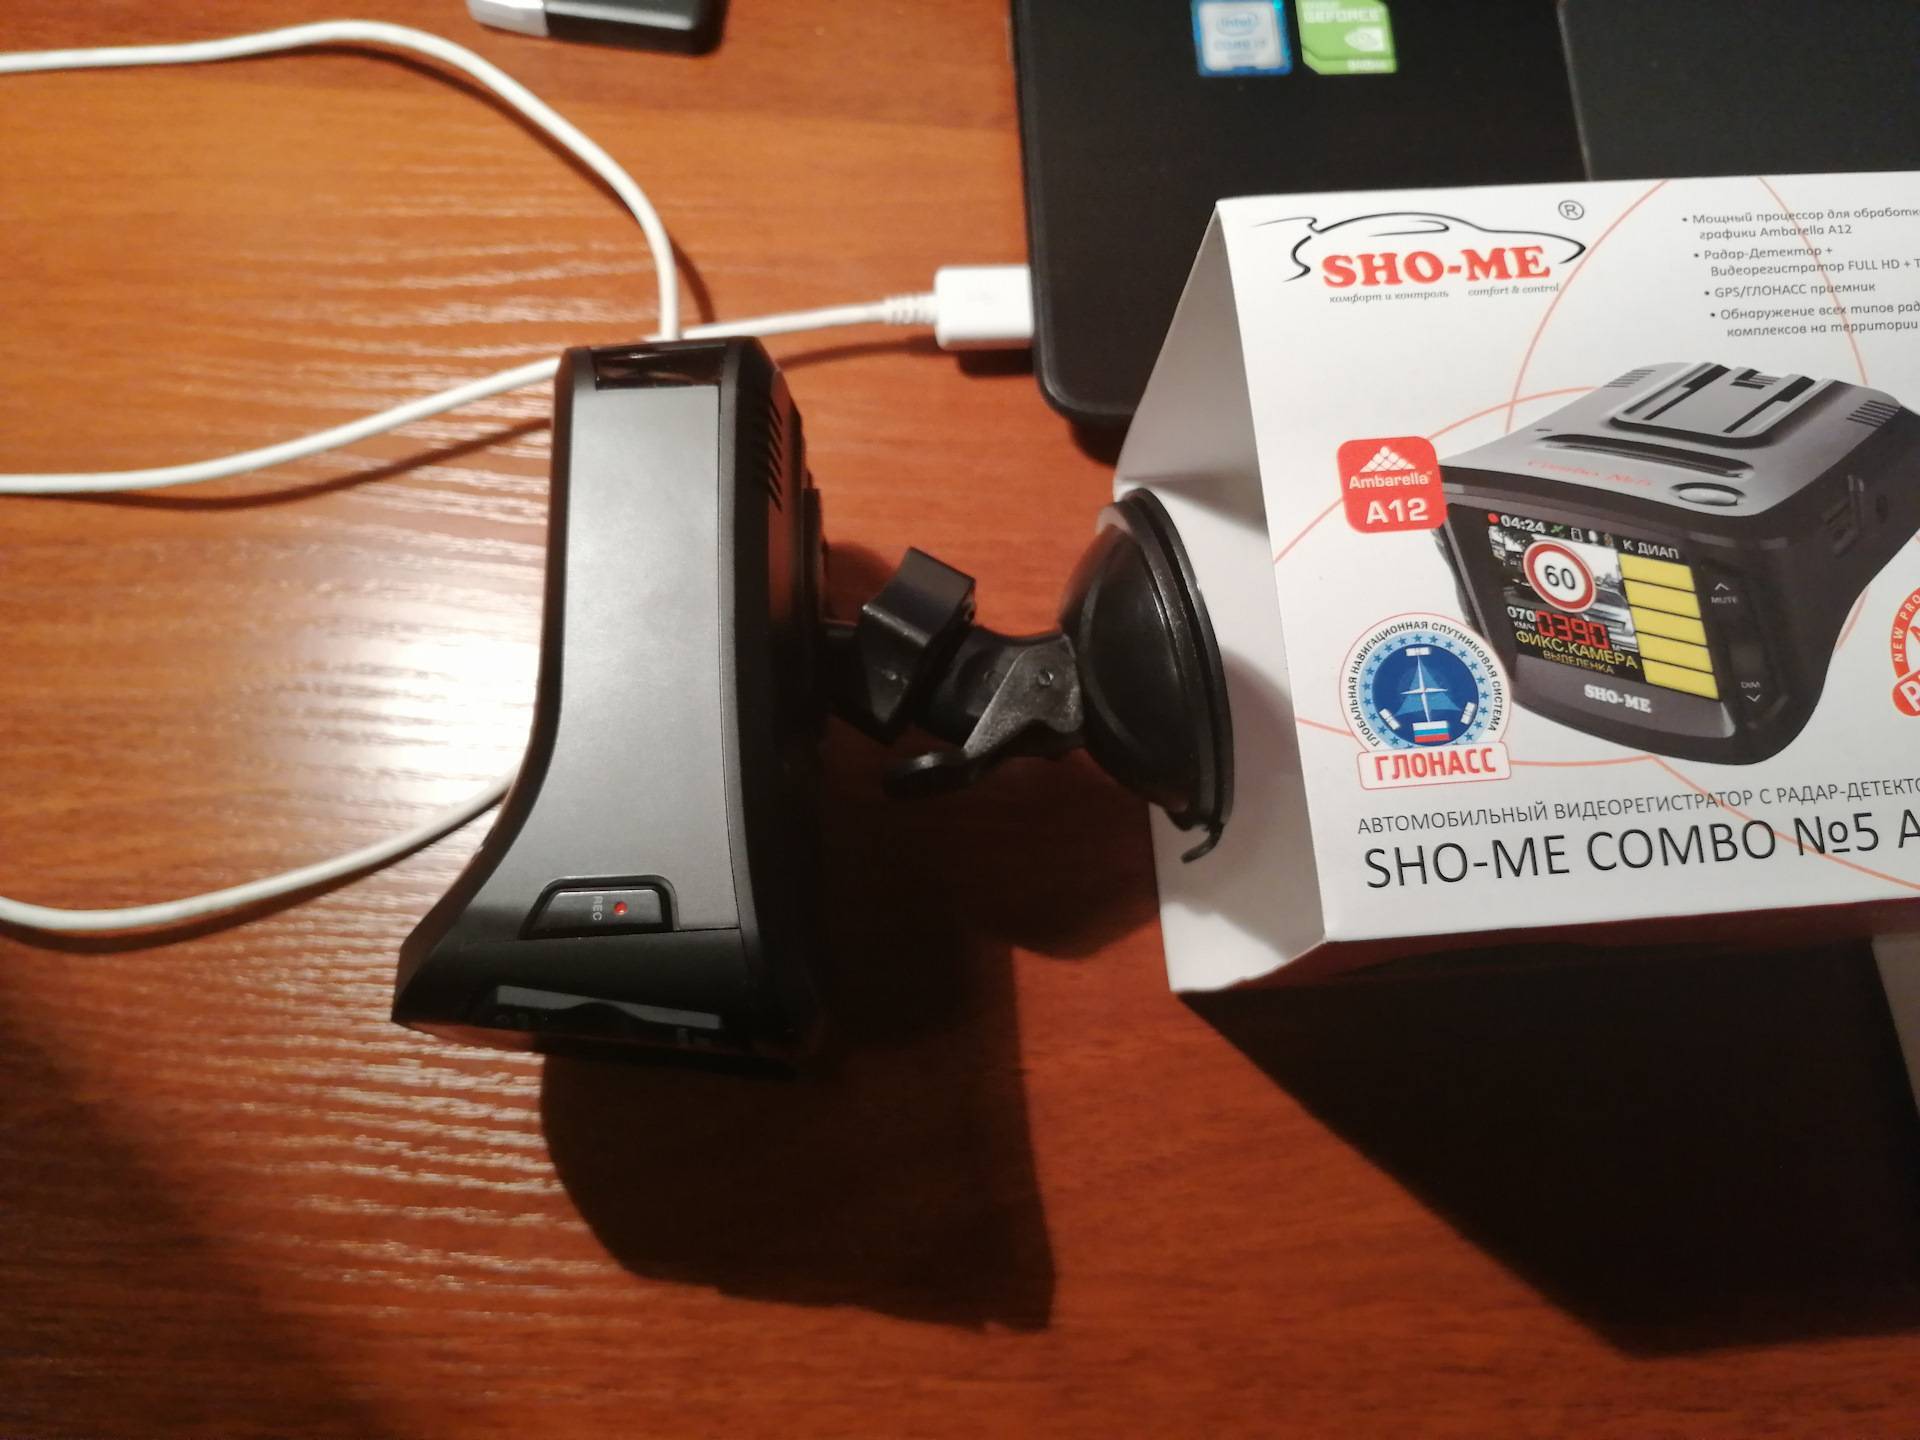 Отзывы на sho-me combo mini от владельцев видеорегистратора с радар-детектором